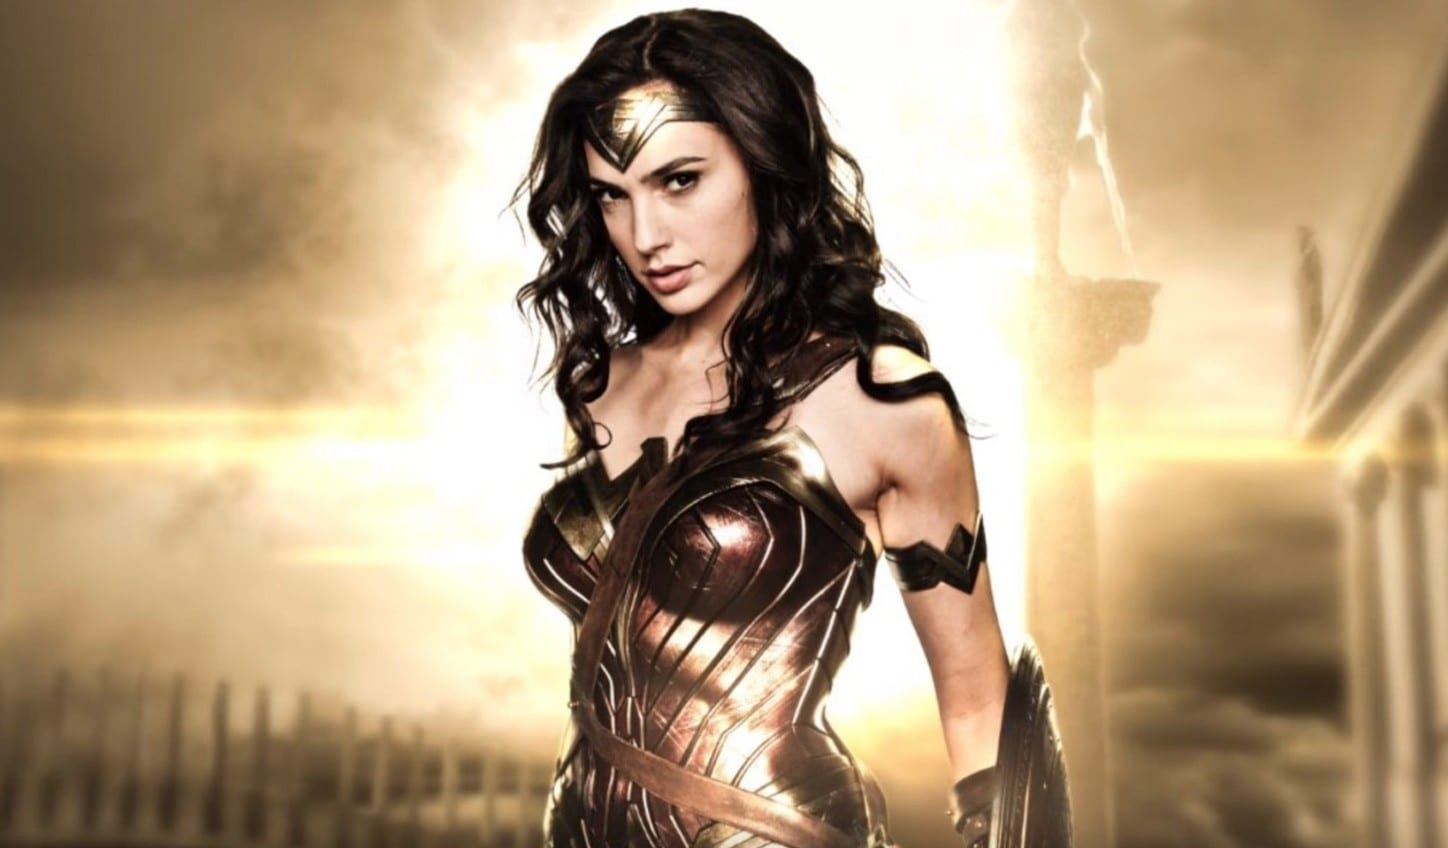 Zack Snyder dévoile une nouvelle image de Wonder Woman